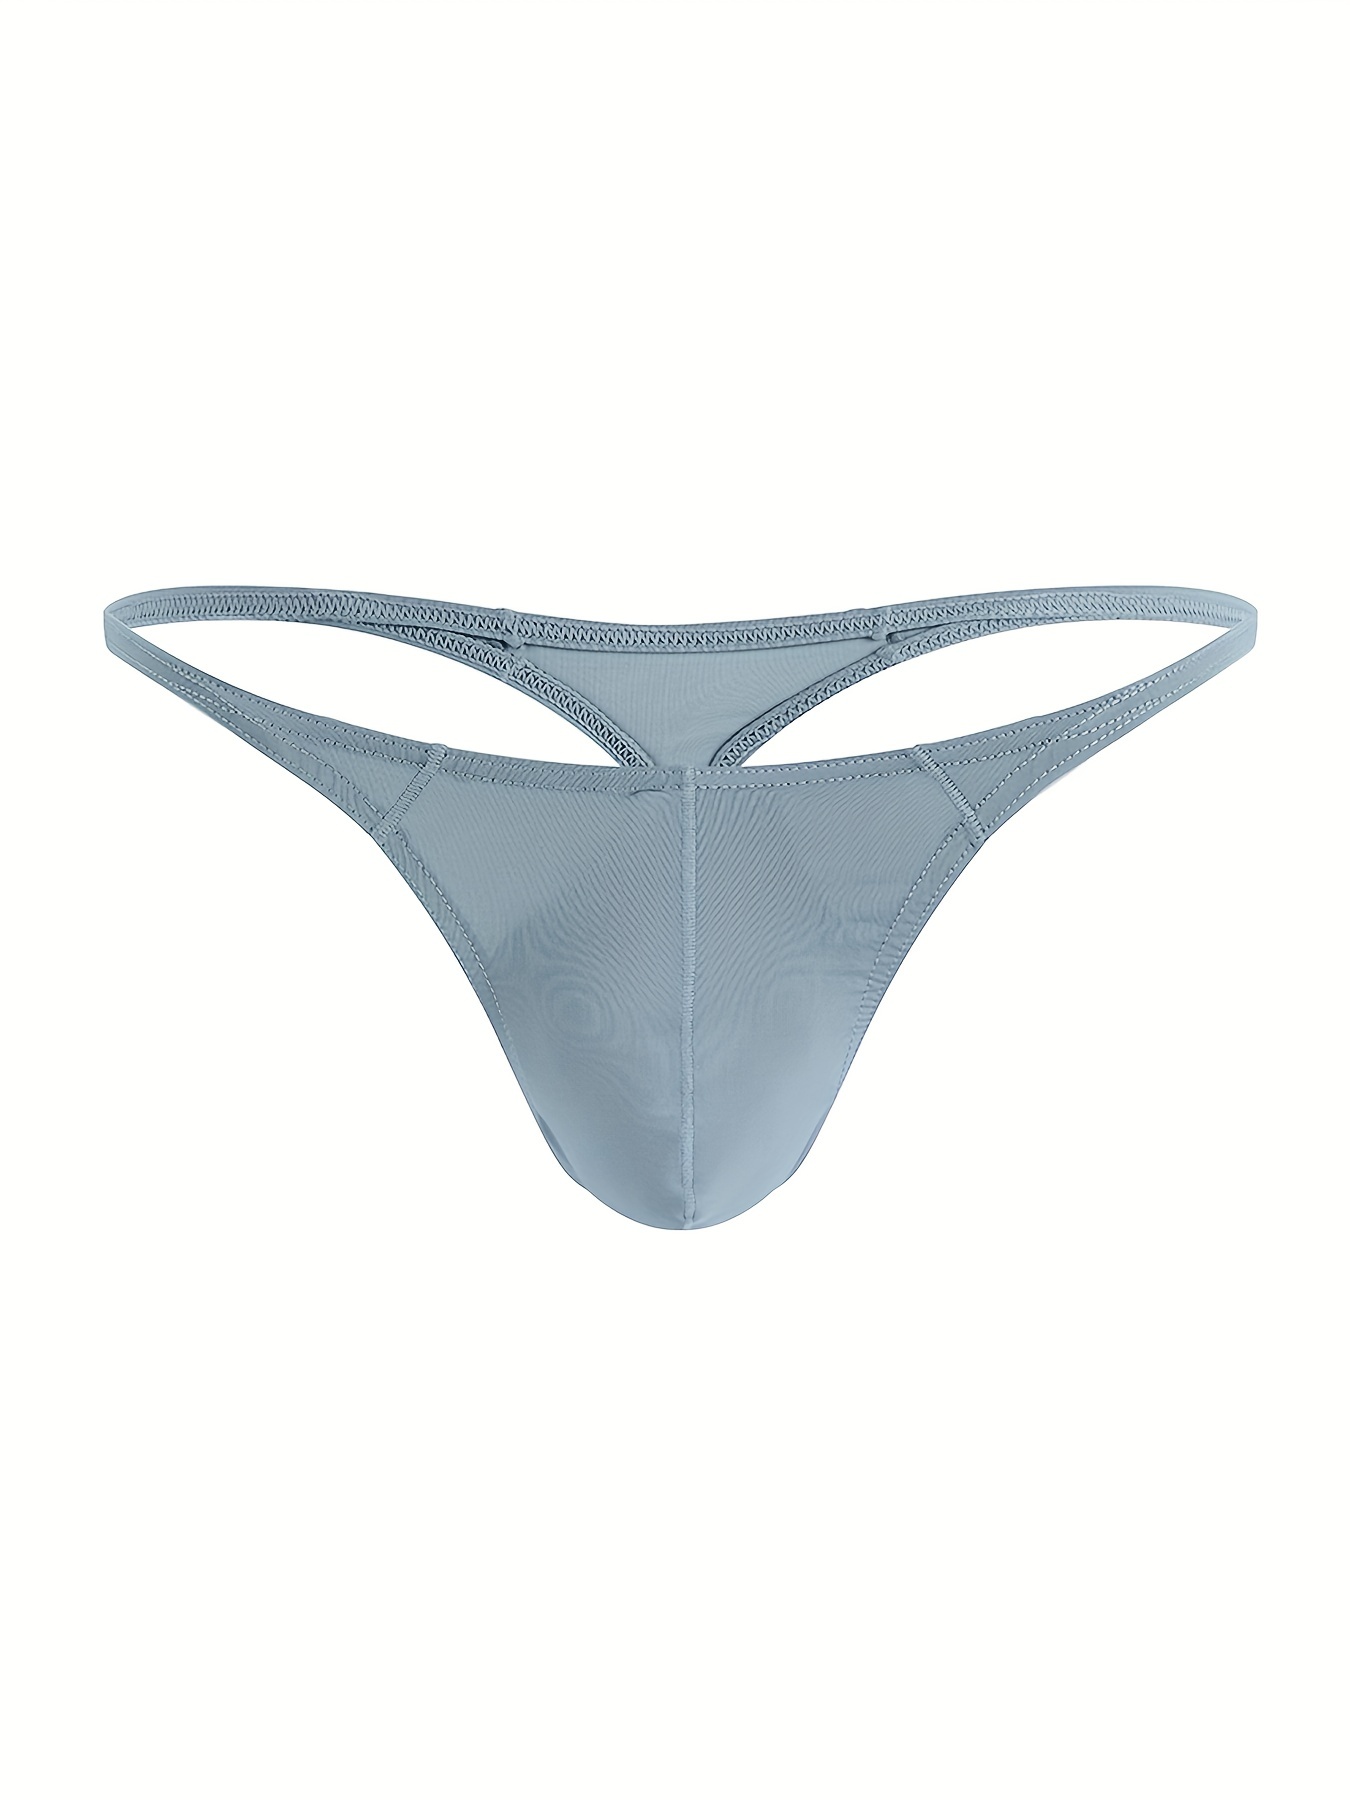 Mens Bikinis Underwear –  - Men's Underwear and  Swimwear